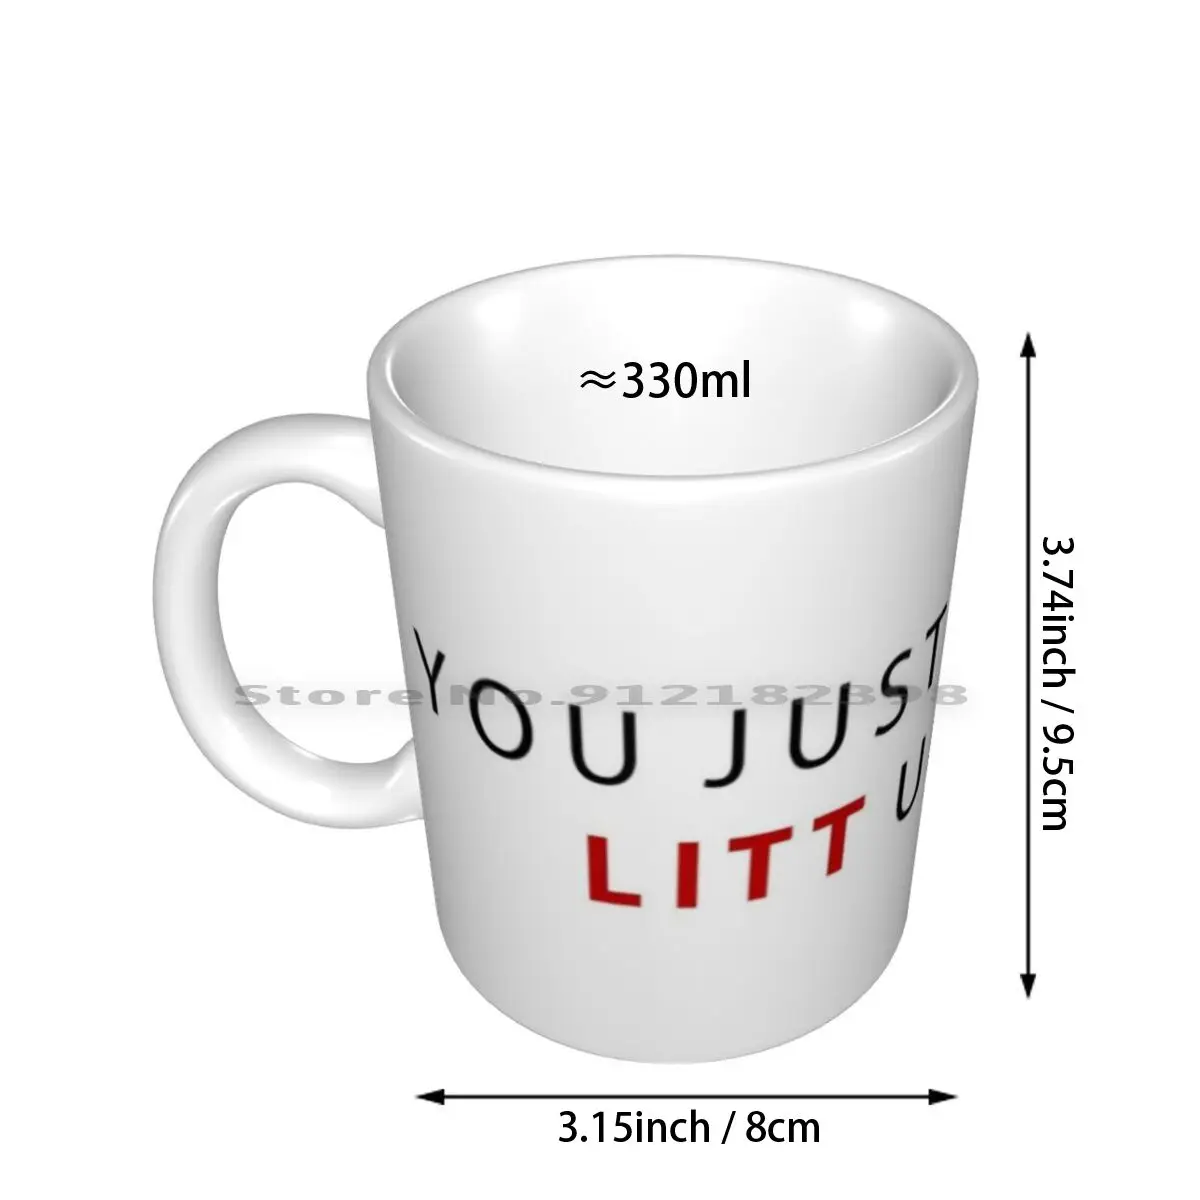 You Just Got Litt Up Ceramic Mugs Coffee Cups Milk Tea Mug Luis Litt Suits  Mike Ross Harvey Specter You Just Got Litt Up - AliExpress